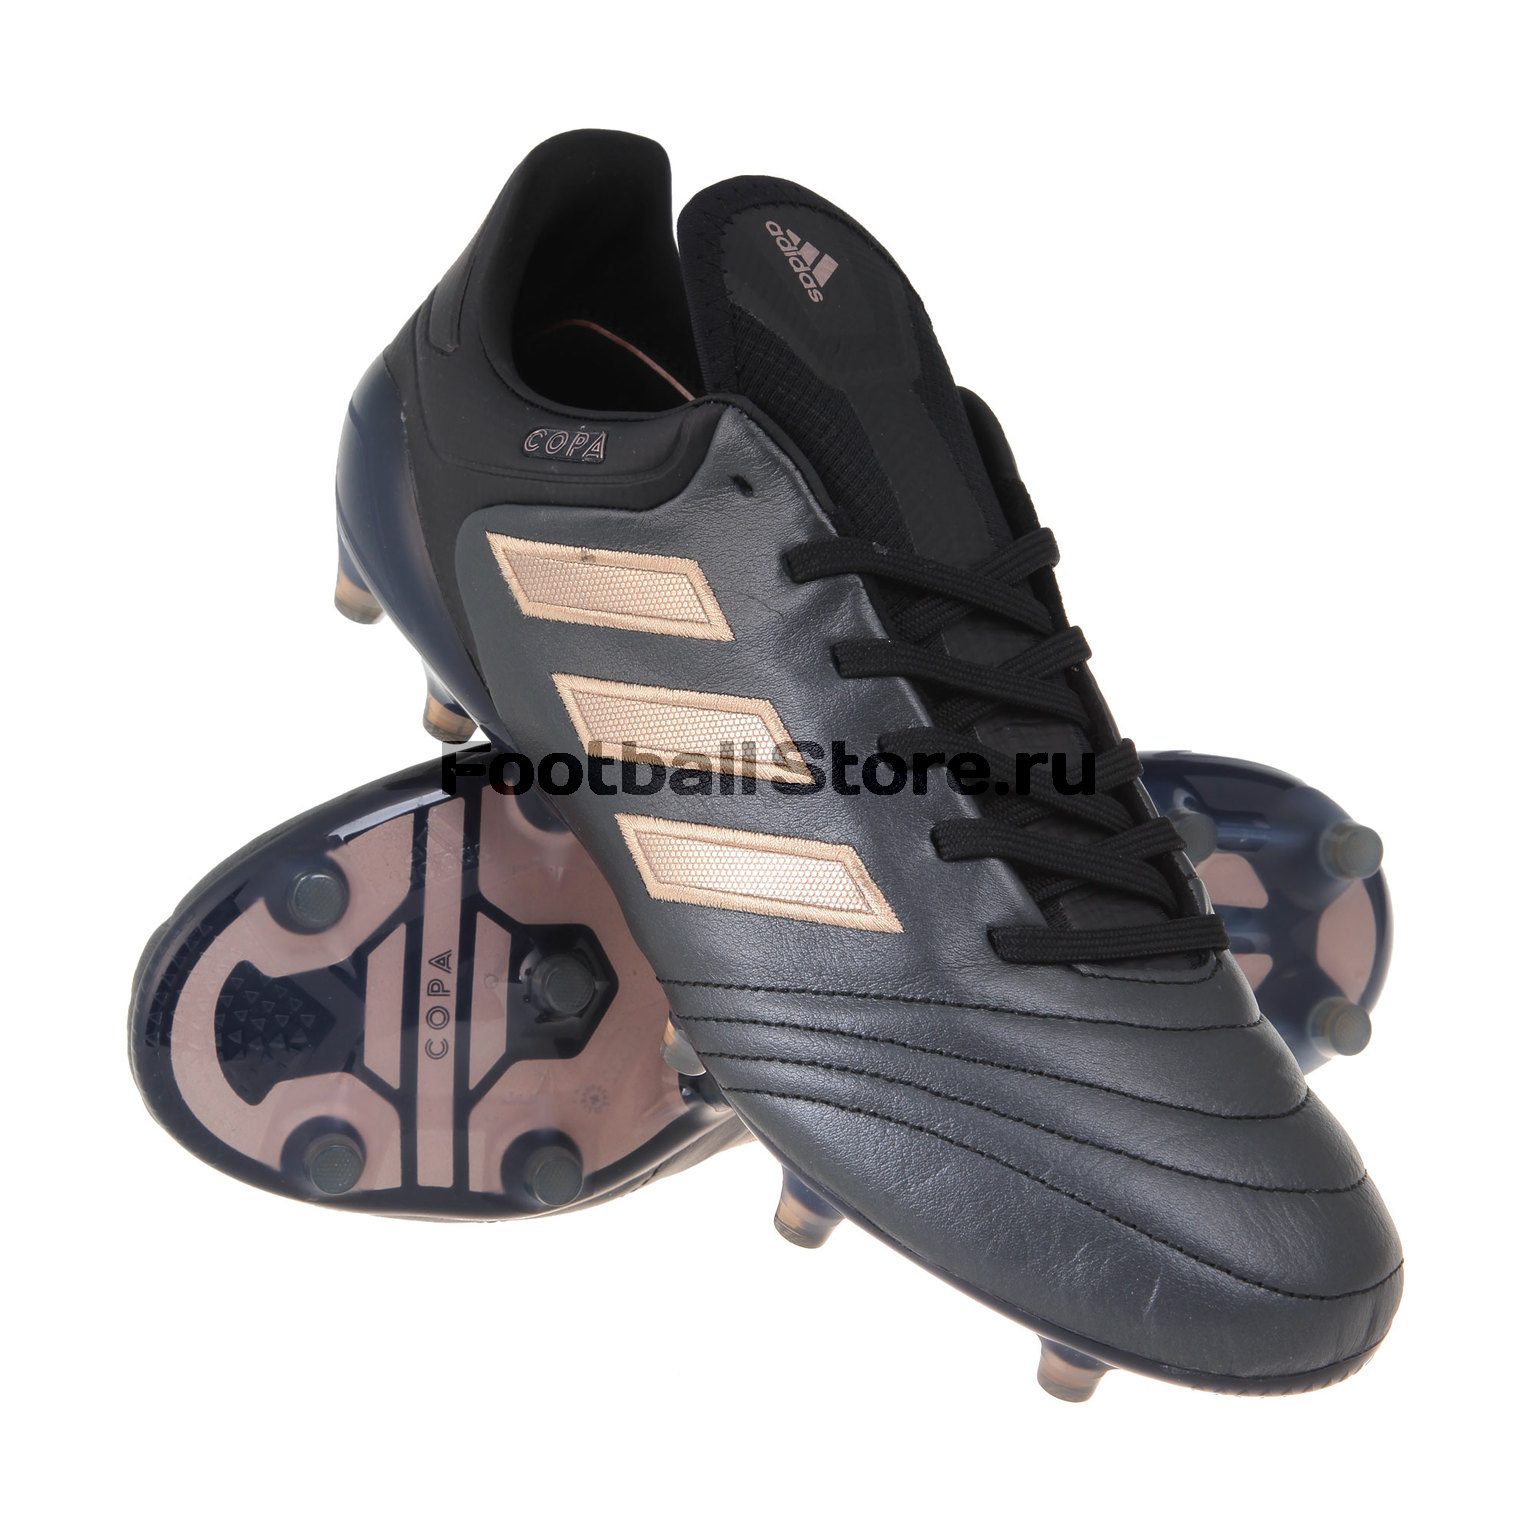 Бутсы Adidas 17.1 FG BA8517 – купить бутсы в интернет магазине Footballstore, цена, фото, отзывы